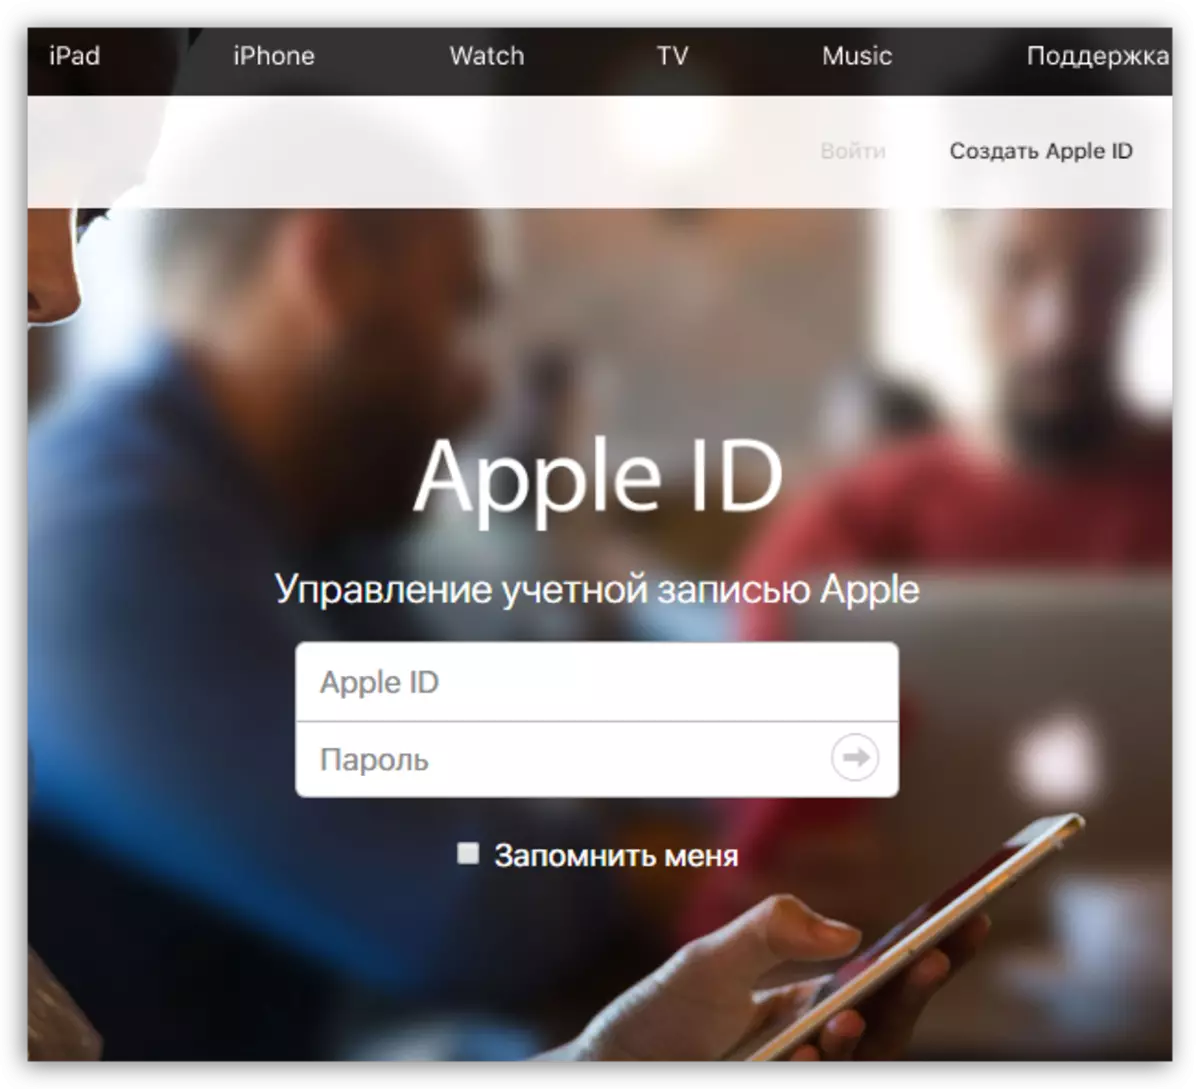 Autorizace na webových stránkách Apple ID